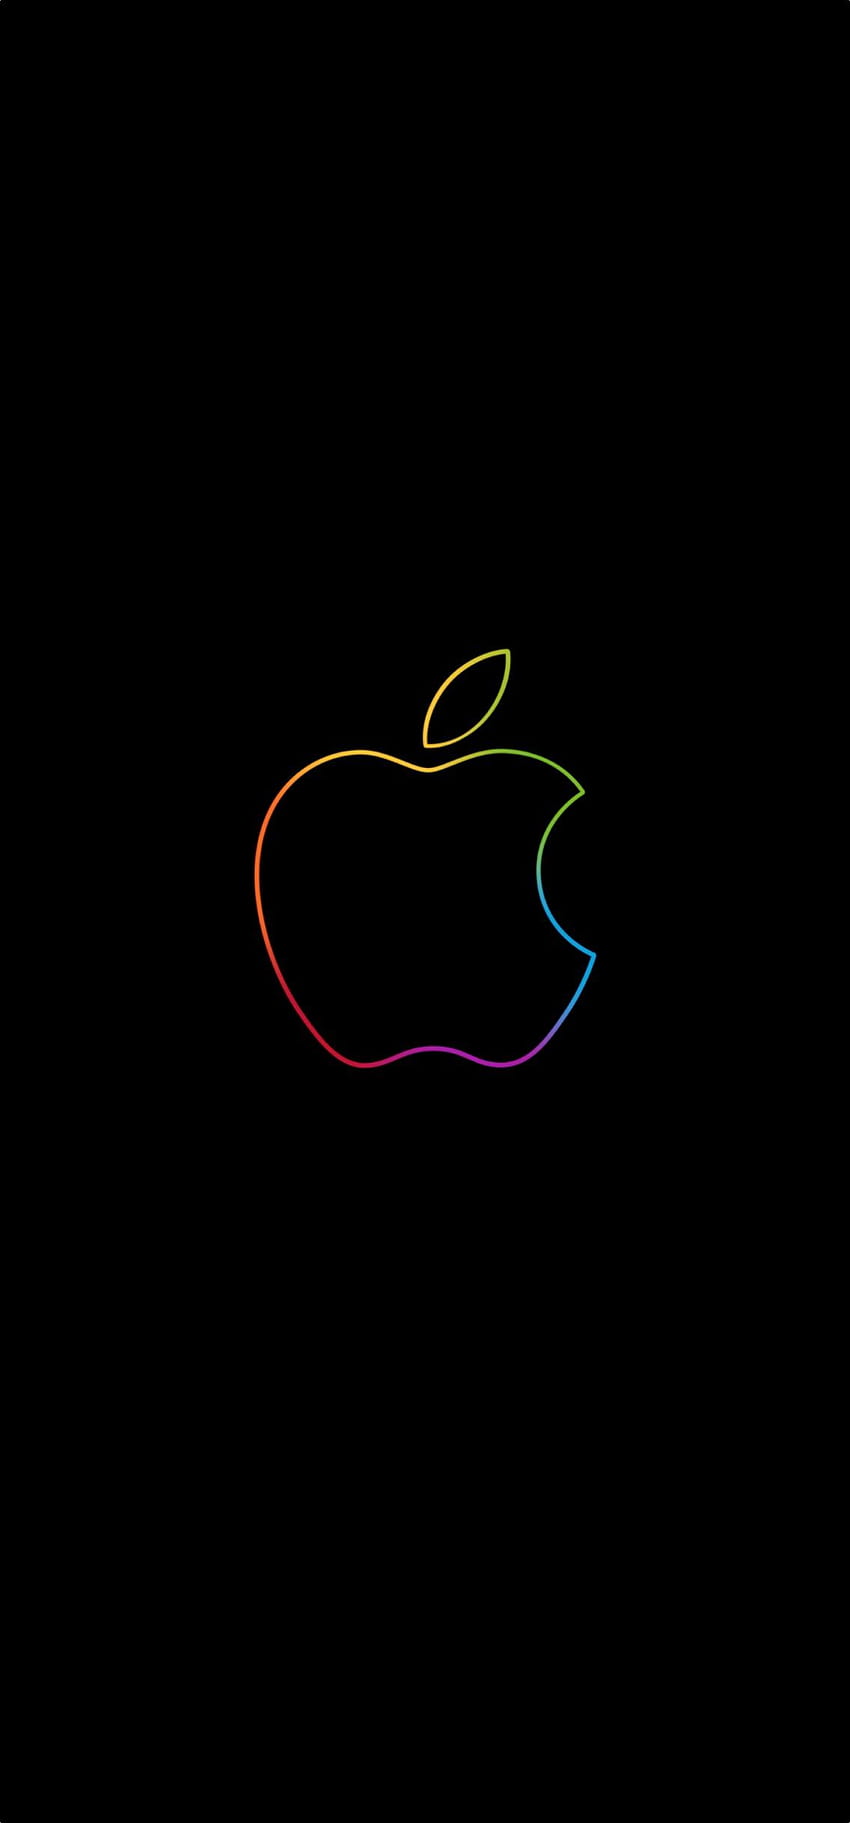 Apple Store con The Colorful Apple, logotipo de Apple iPhone fondo de pantalla del teléfono